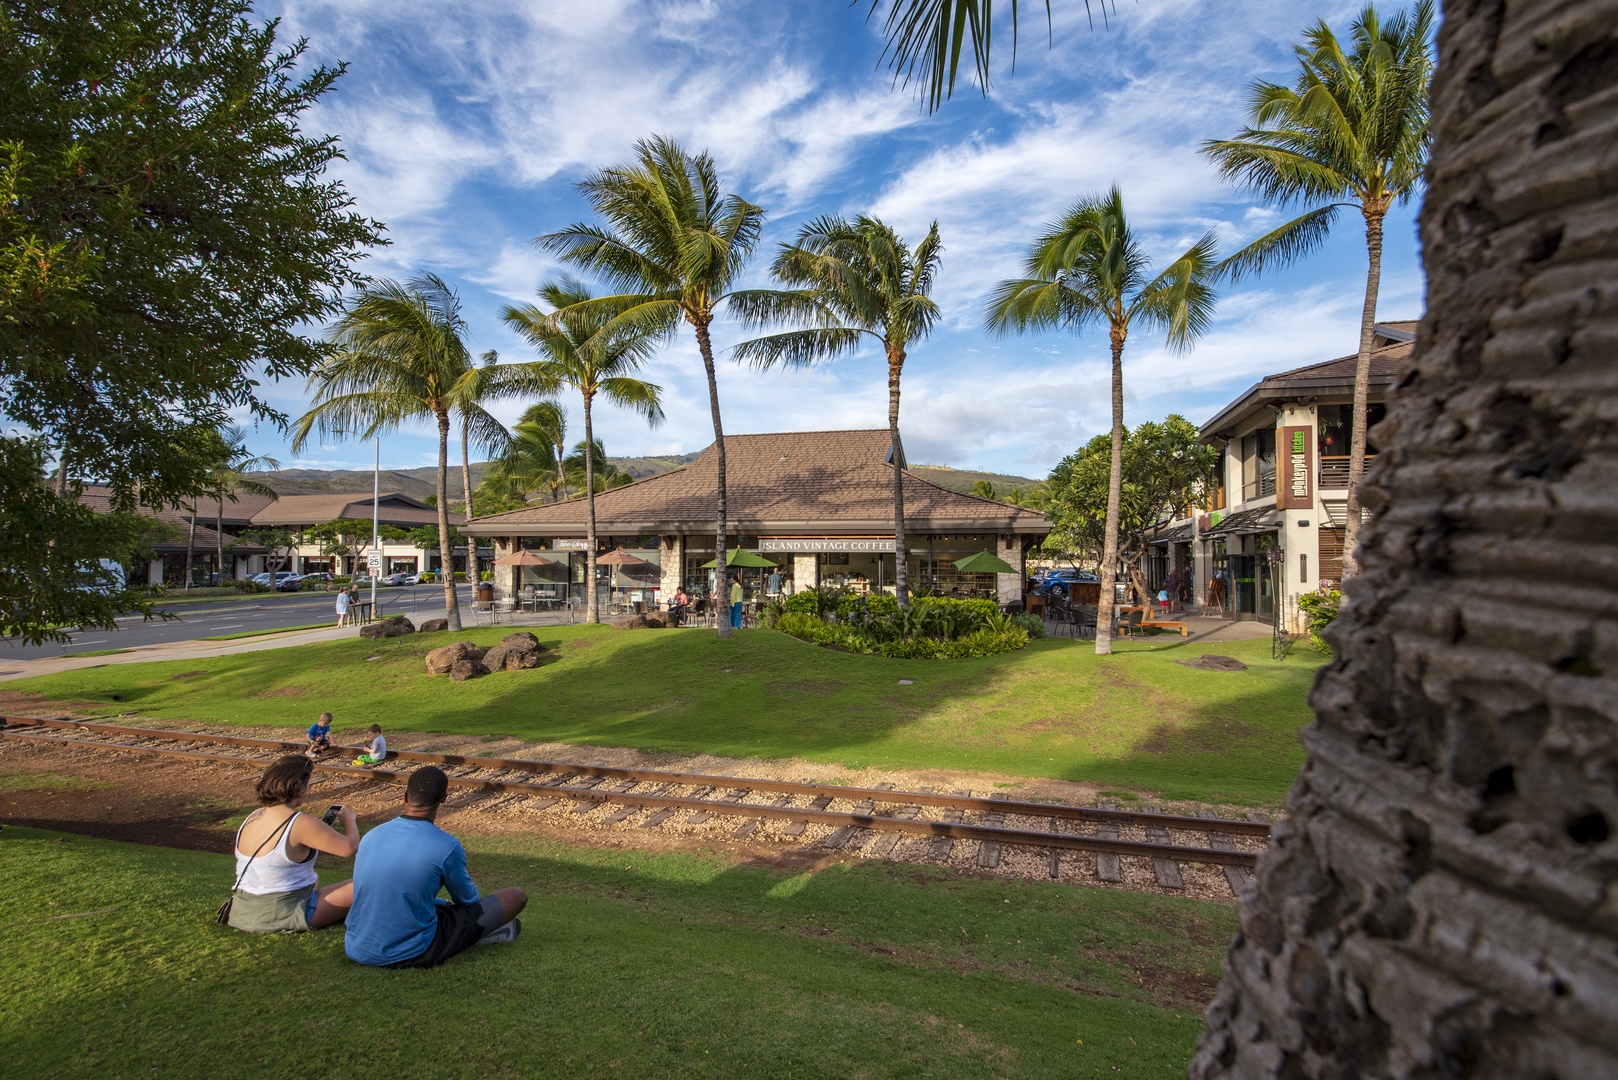 Kapolei Vacation Rentals, Ko Olina Kai 1065E - Explore the island shops and relax on vacation.